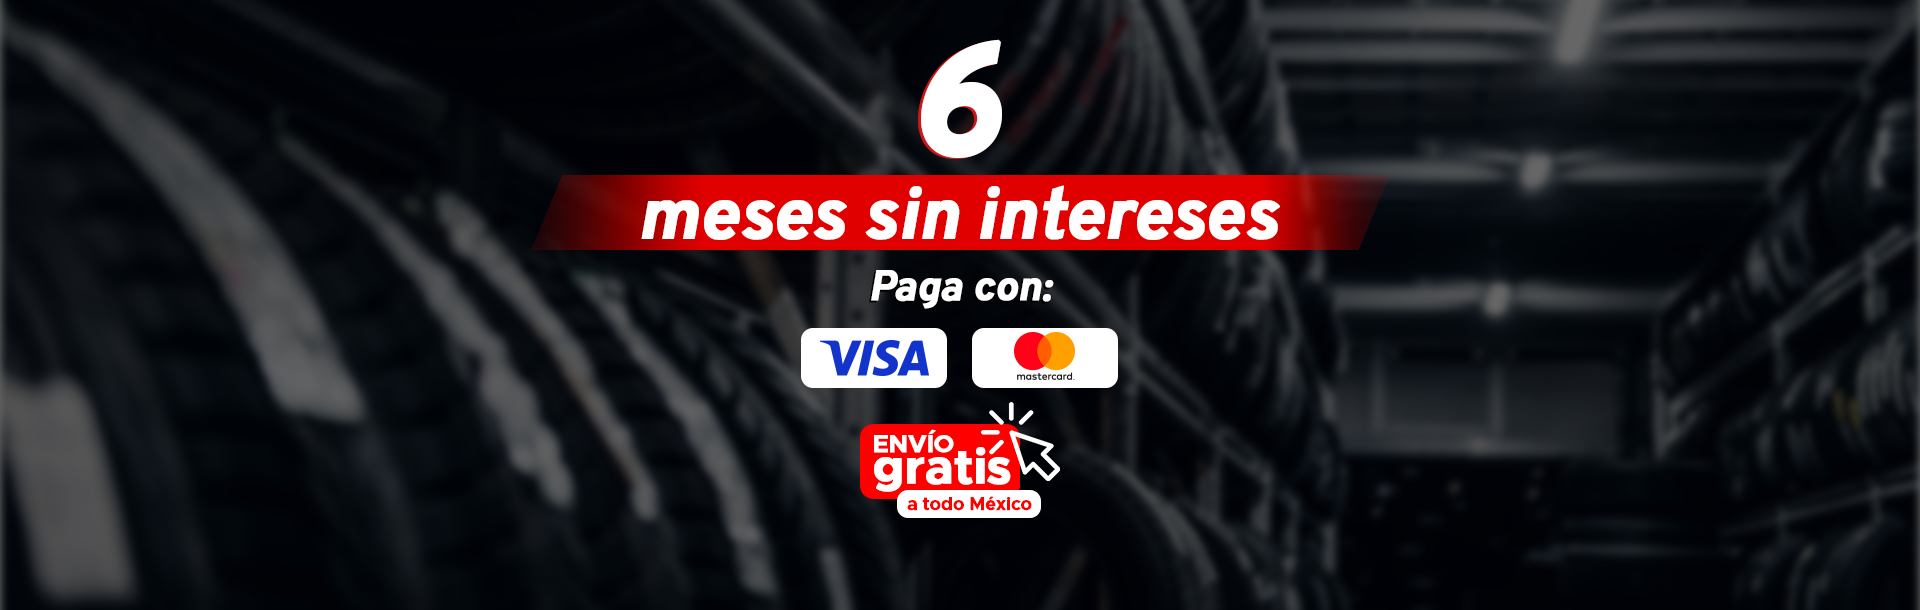 6 meses sin intereses. Paga con Visa, Mastercard y Paypal. ¡Envío gratis a todo México!